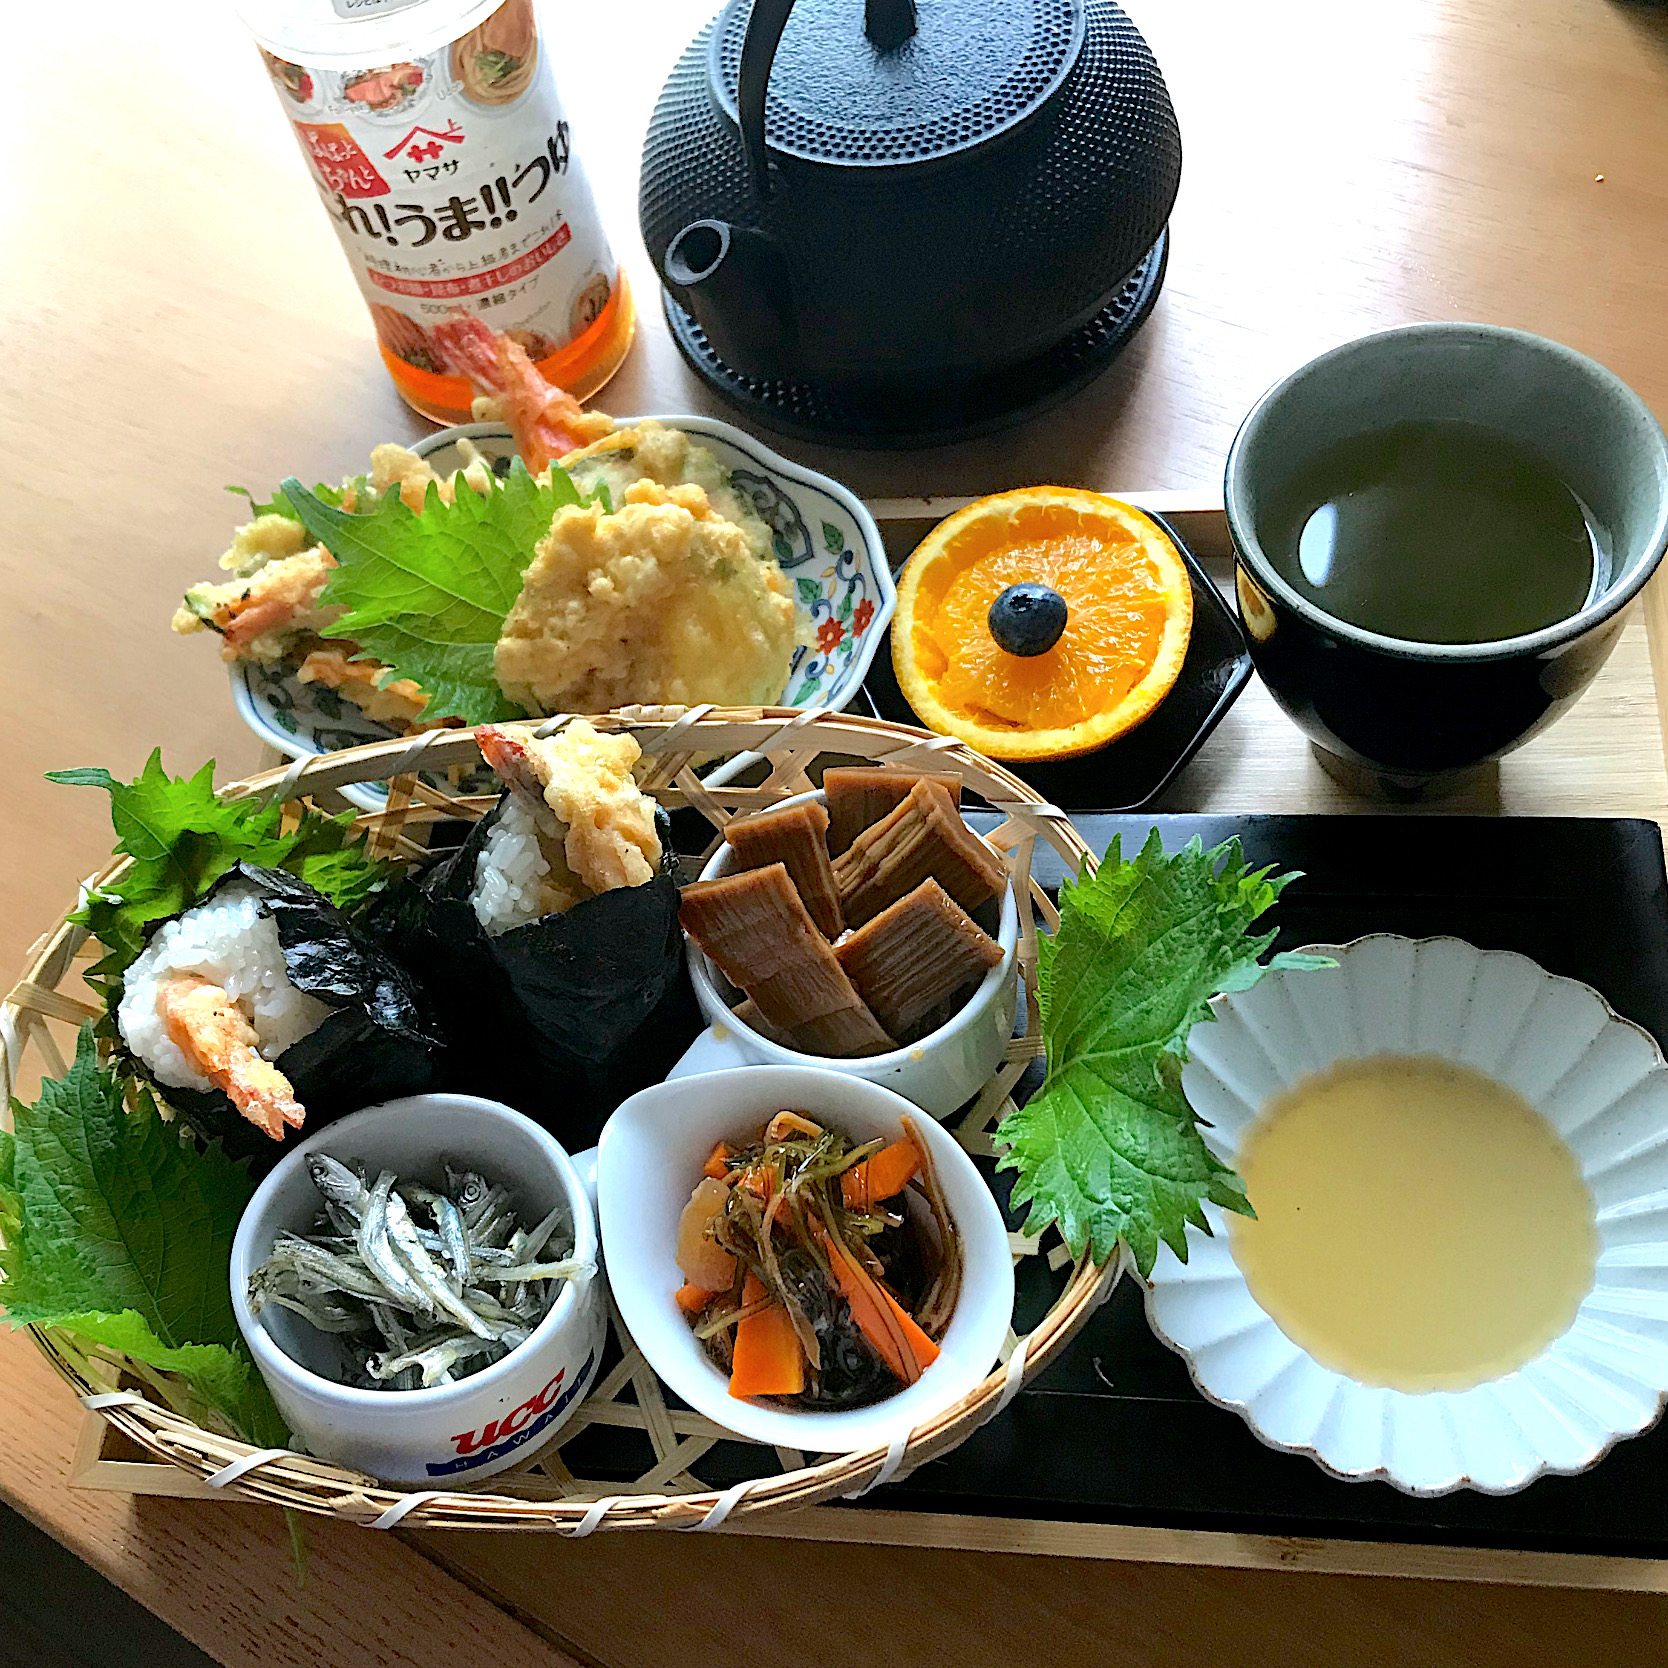 シュトママさんの料理 ズッキーニと新玉ねぎかき揚げ天ぷらで天むすにリメイク